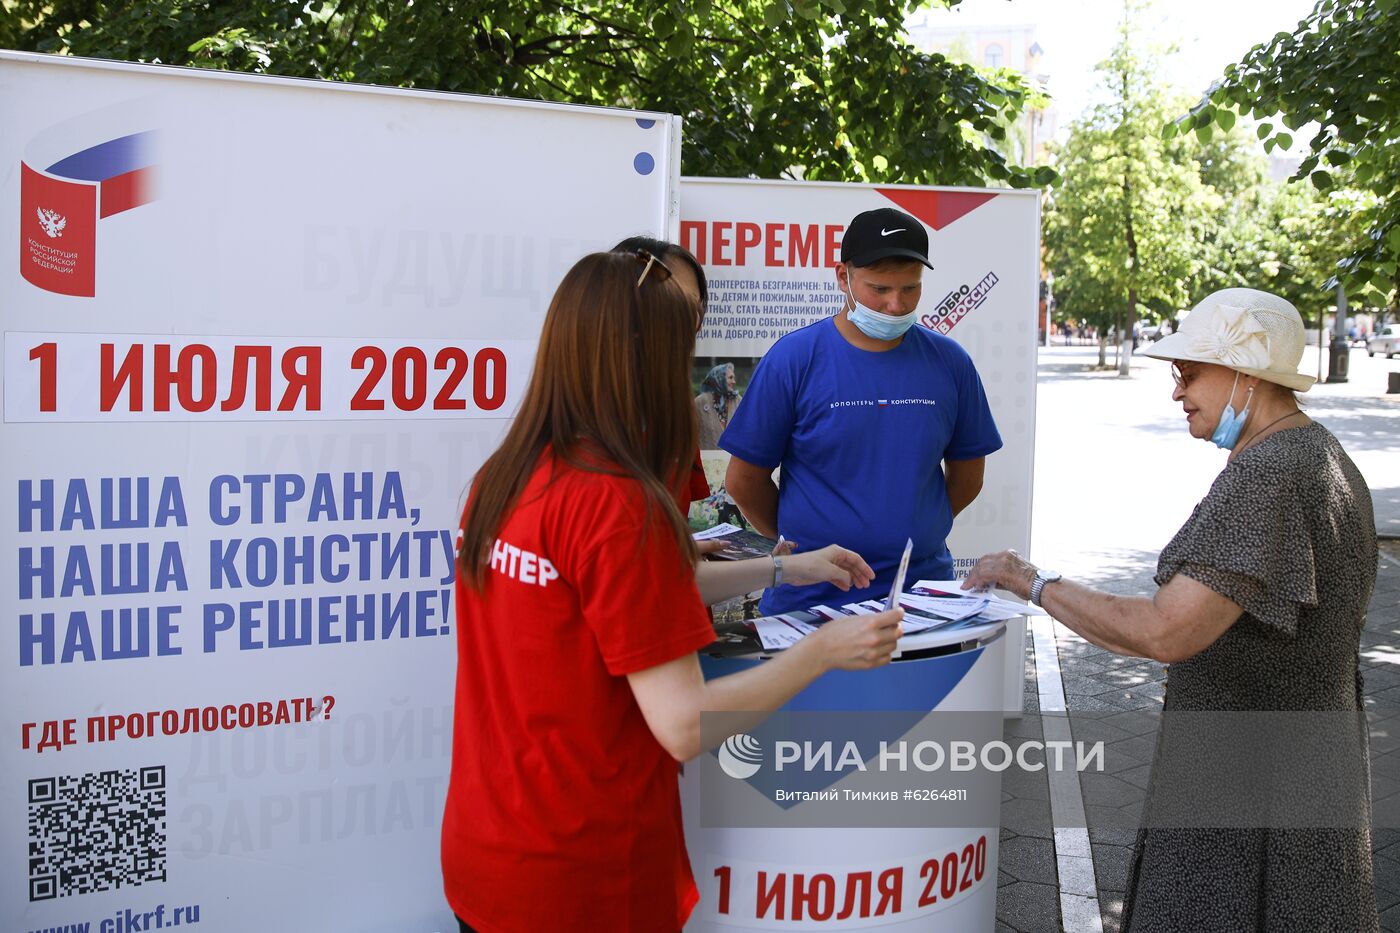 Волонтеры начали информировать граждан о поправках в Конституцию